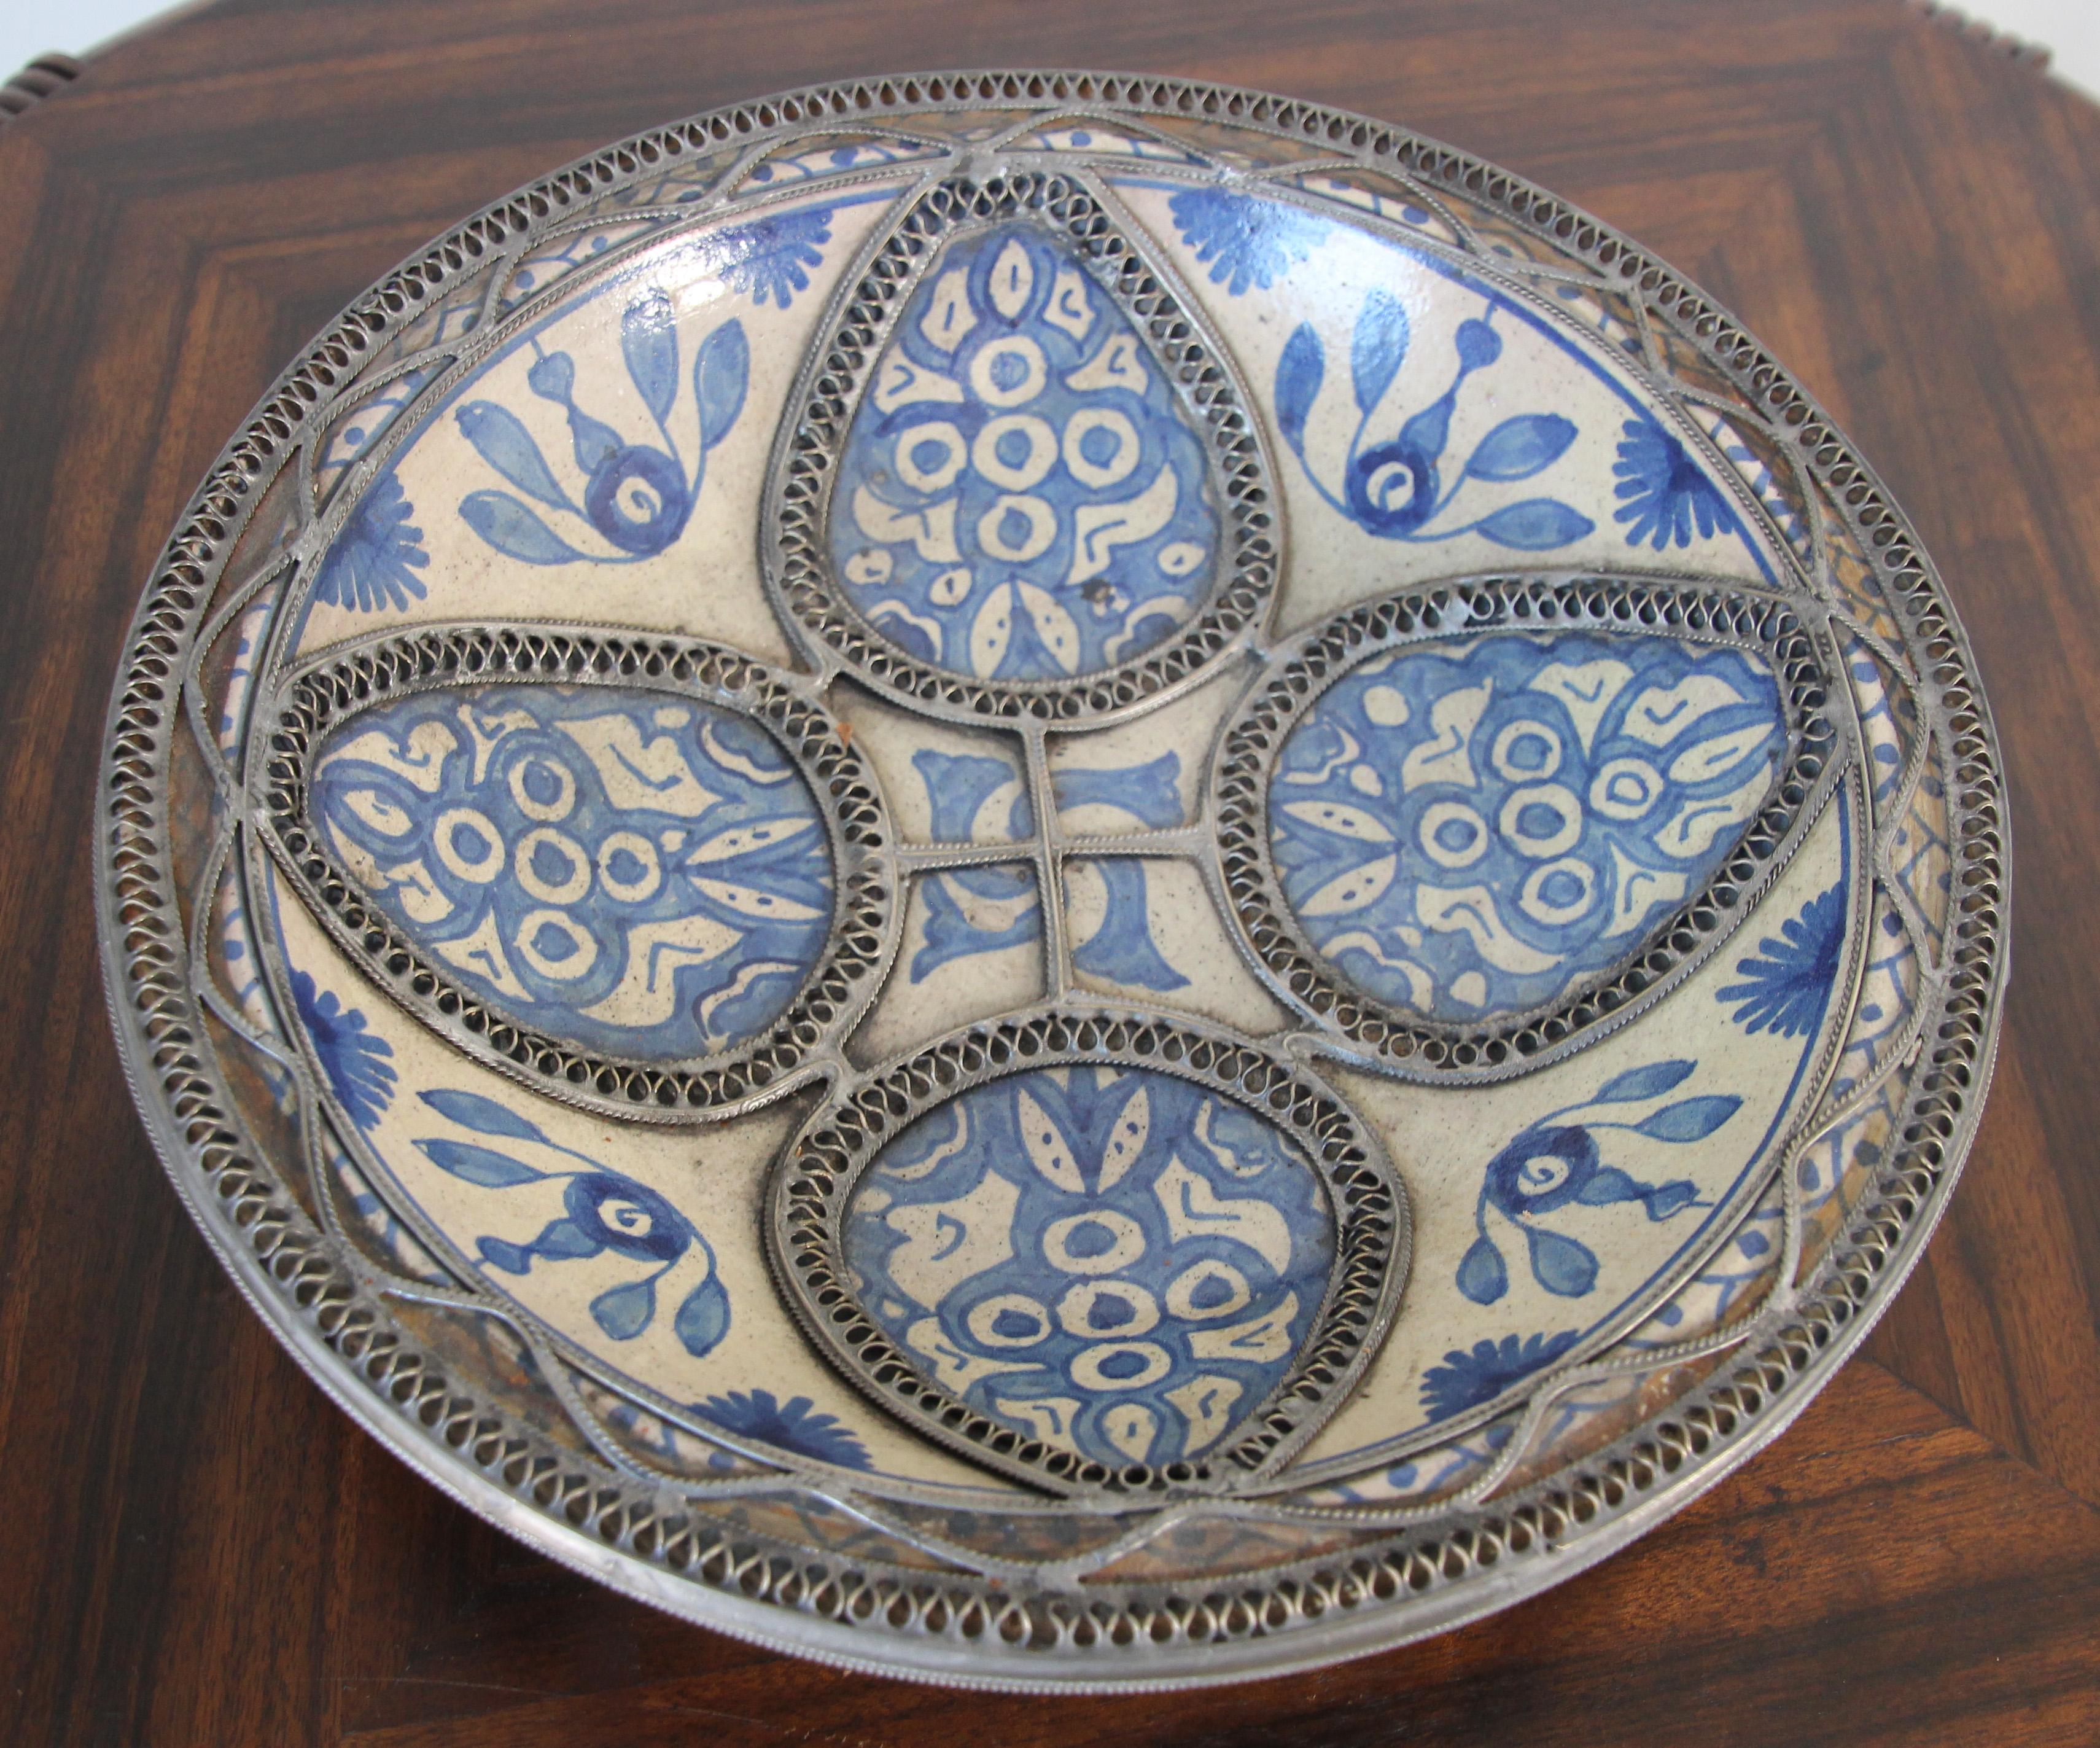 Bol décoratif en céramique marocaine bleu maure, fait à la main, provenant de Fès.
Bol marocain en céramique Bleu de Fès, très beaux motifs peints à la main par un artiste de Fès.
Motifs mauresques géométriques et floraux et ornés de motifs en